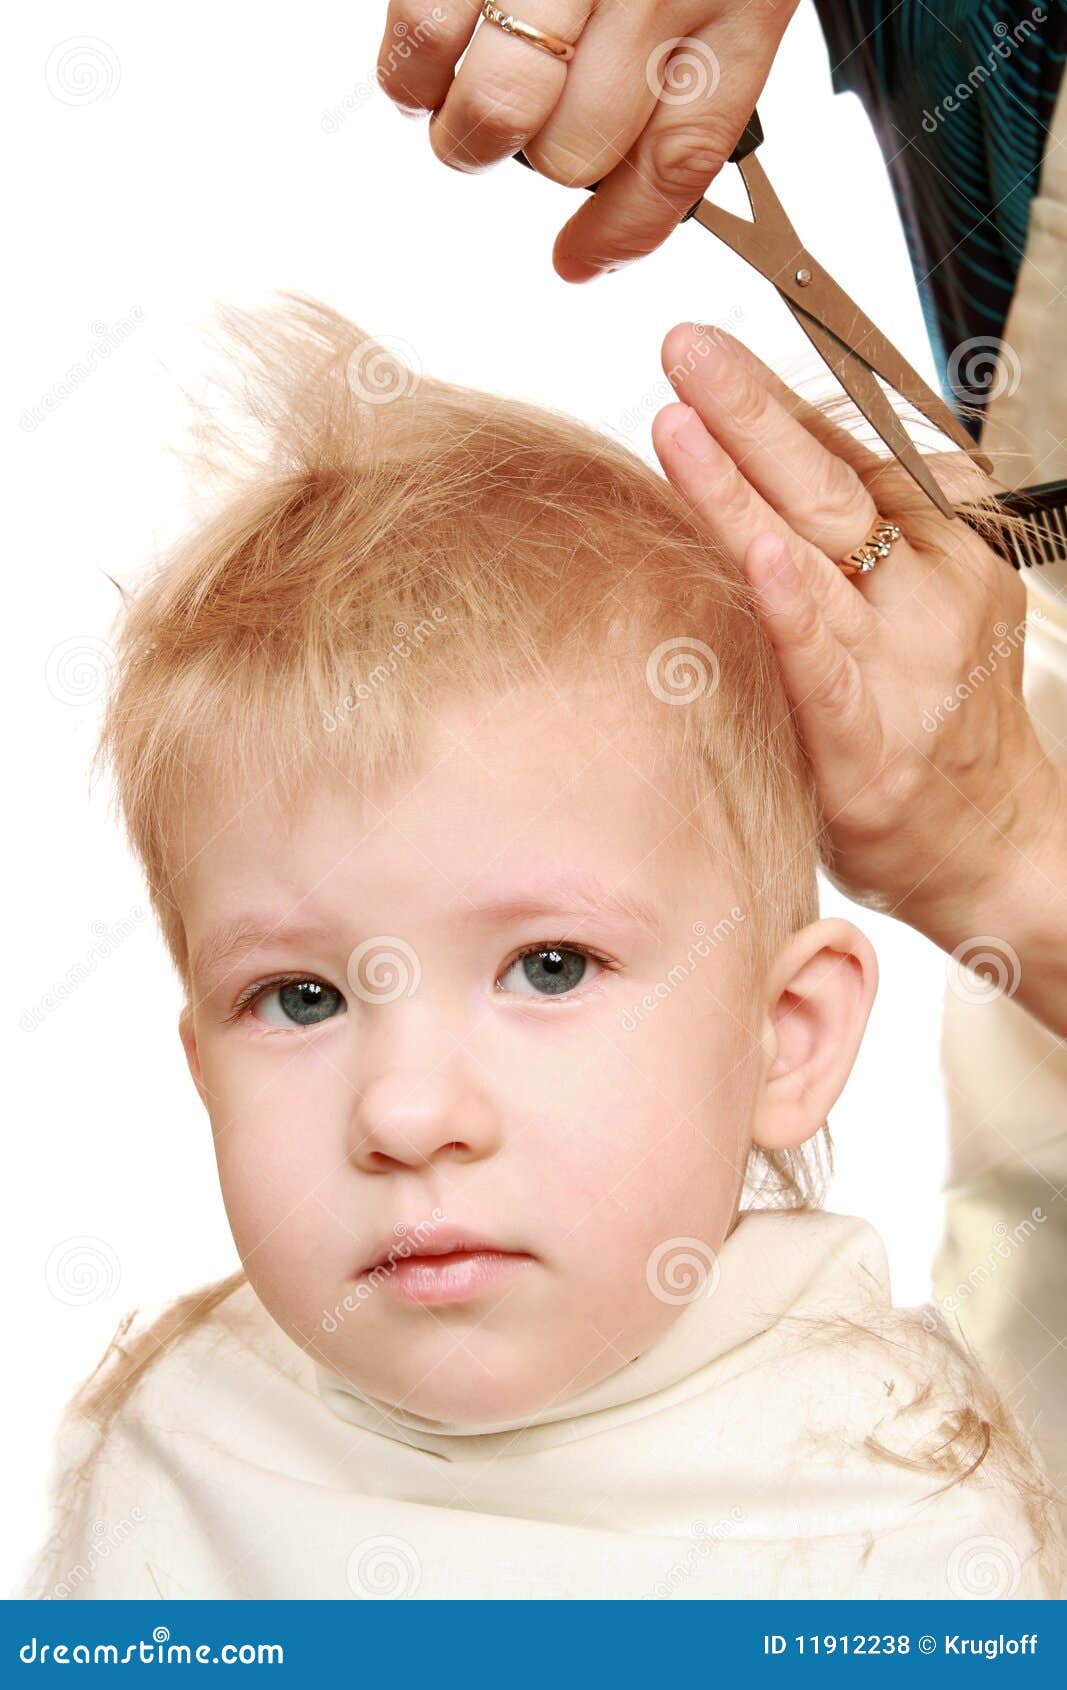 https://thumbs.dreamstime.com/z/women-s-hands-shearers-scissors-2-5-year-old-boy-11912238.jpg